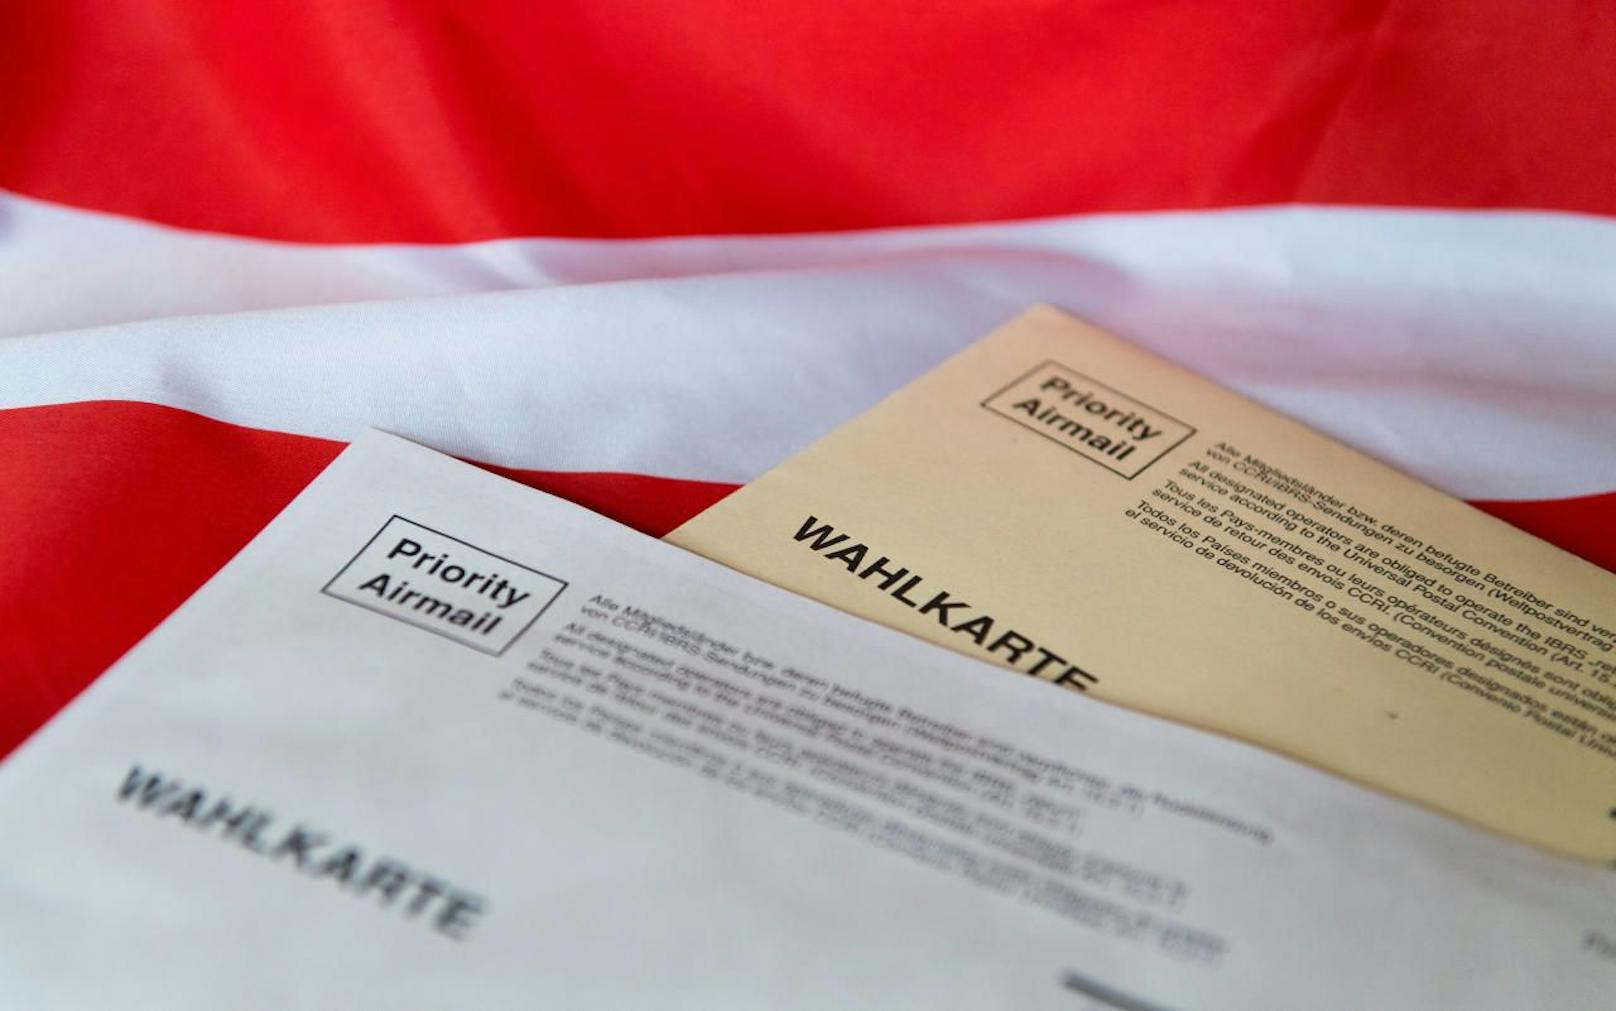 Bereits die Kuverts für die Wahlkarten bei der Bundespräsidentenwahl 2016 waren defekt.